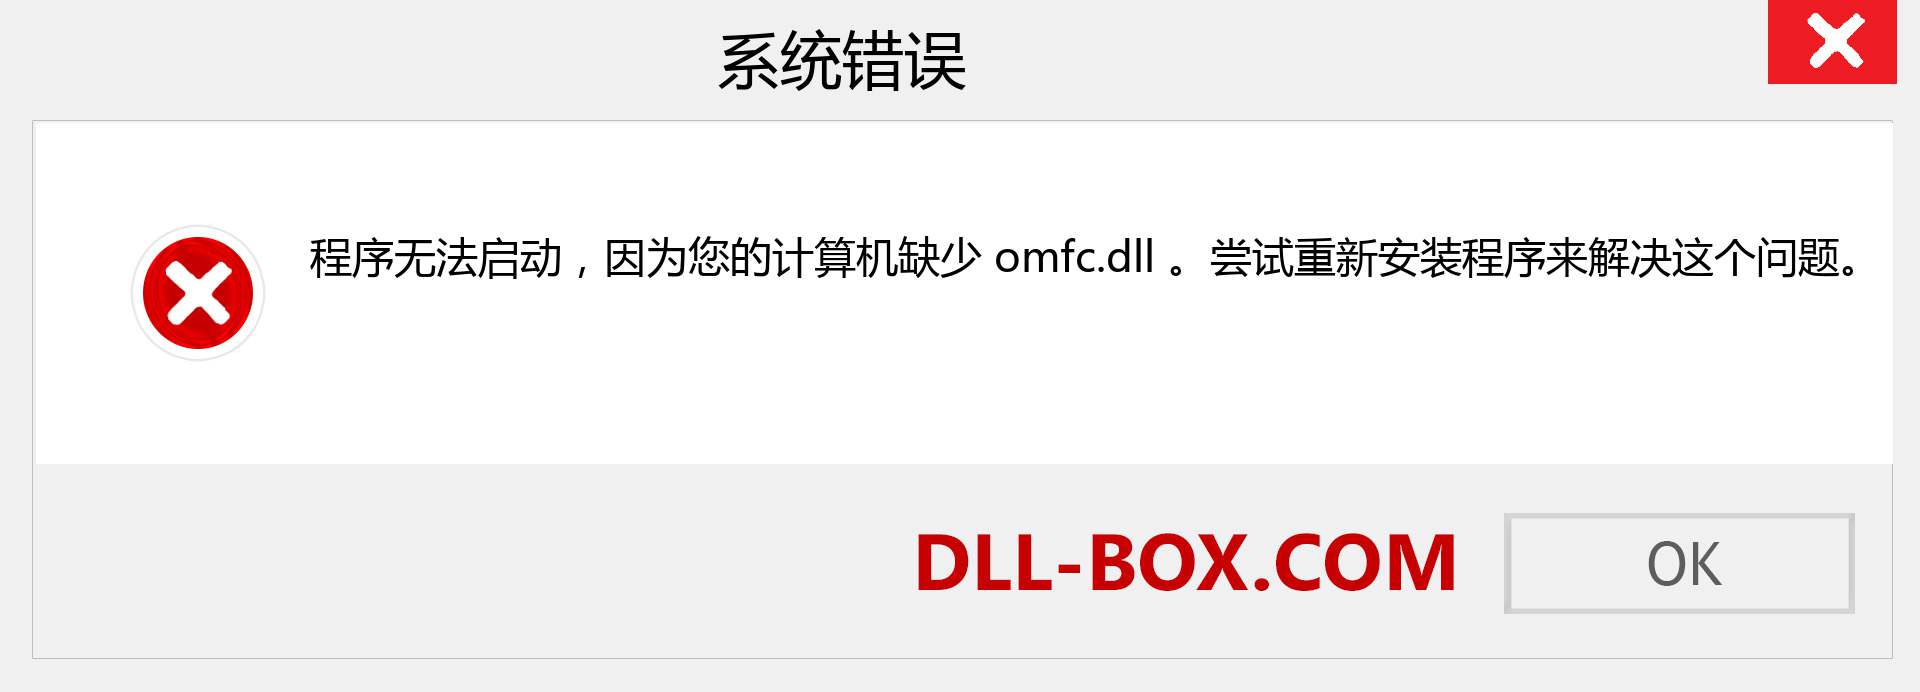 omfc.dll 文件丢失？。 适用于 Windows 7、8、10 的下载 - 修复 Windows、照片、图像上的 omfc dll 丢失错误